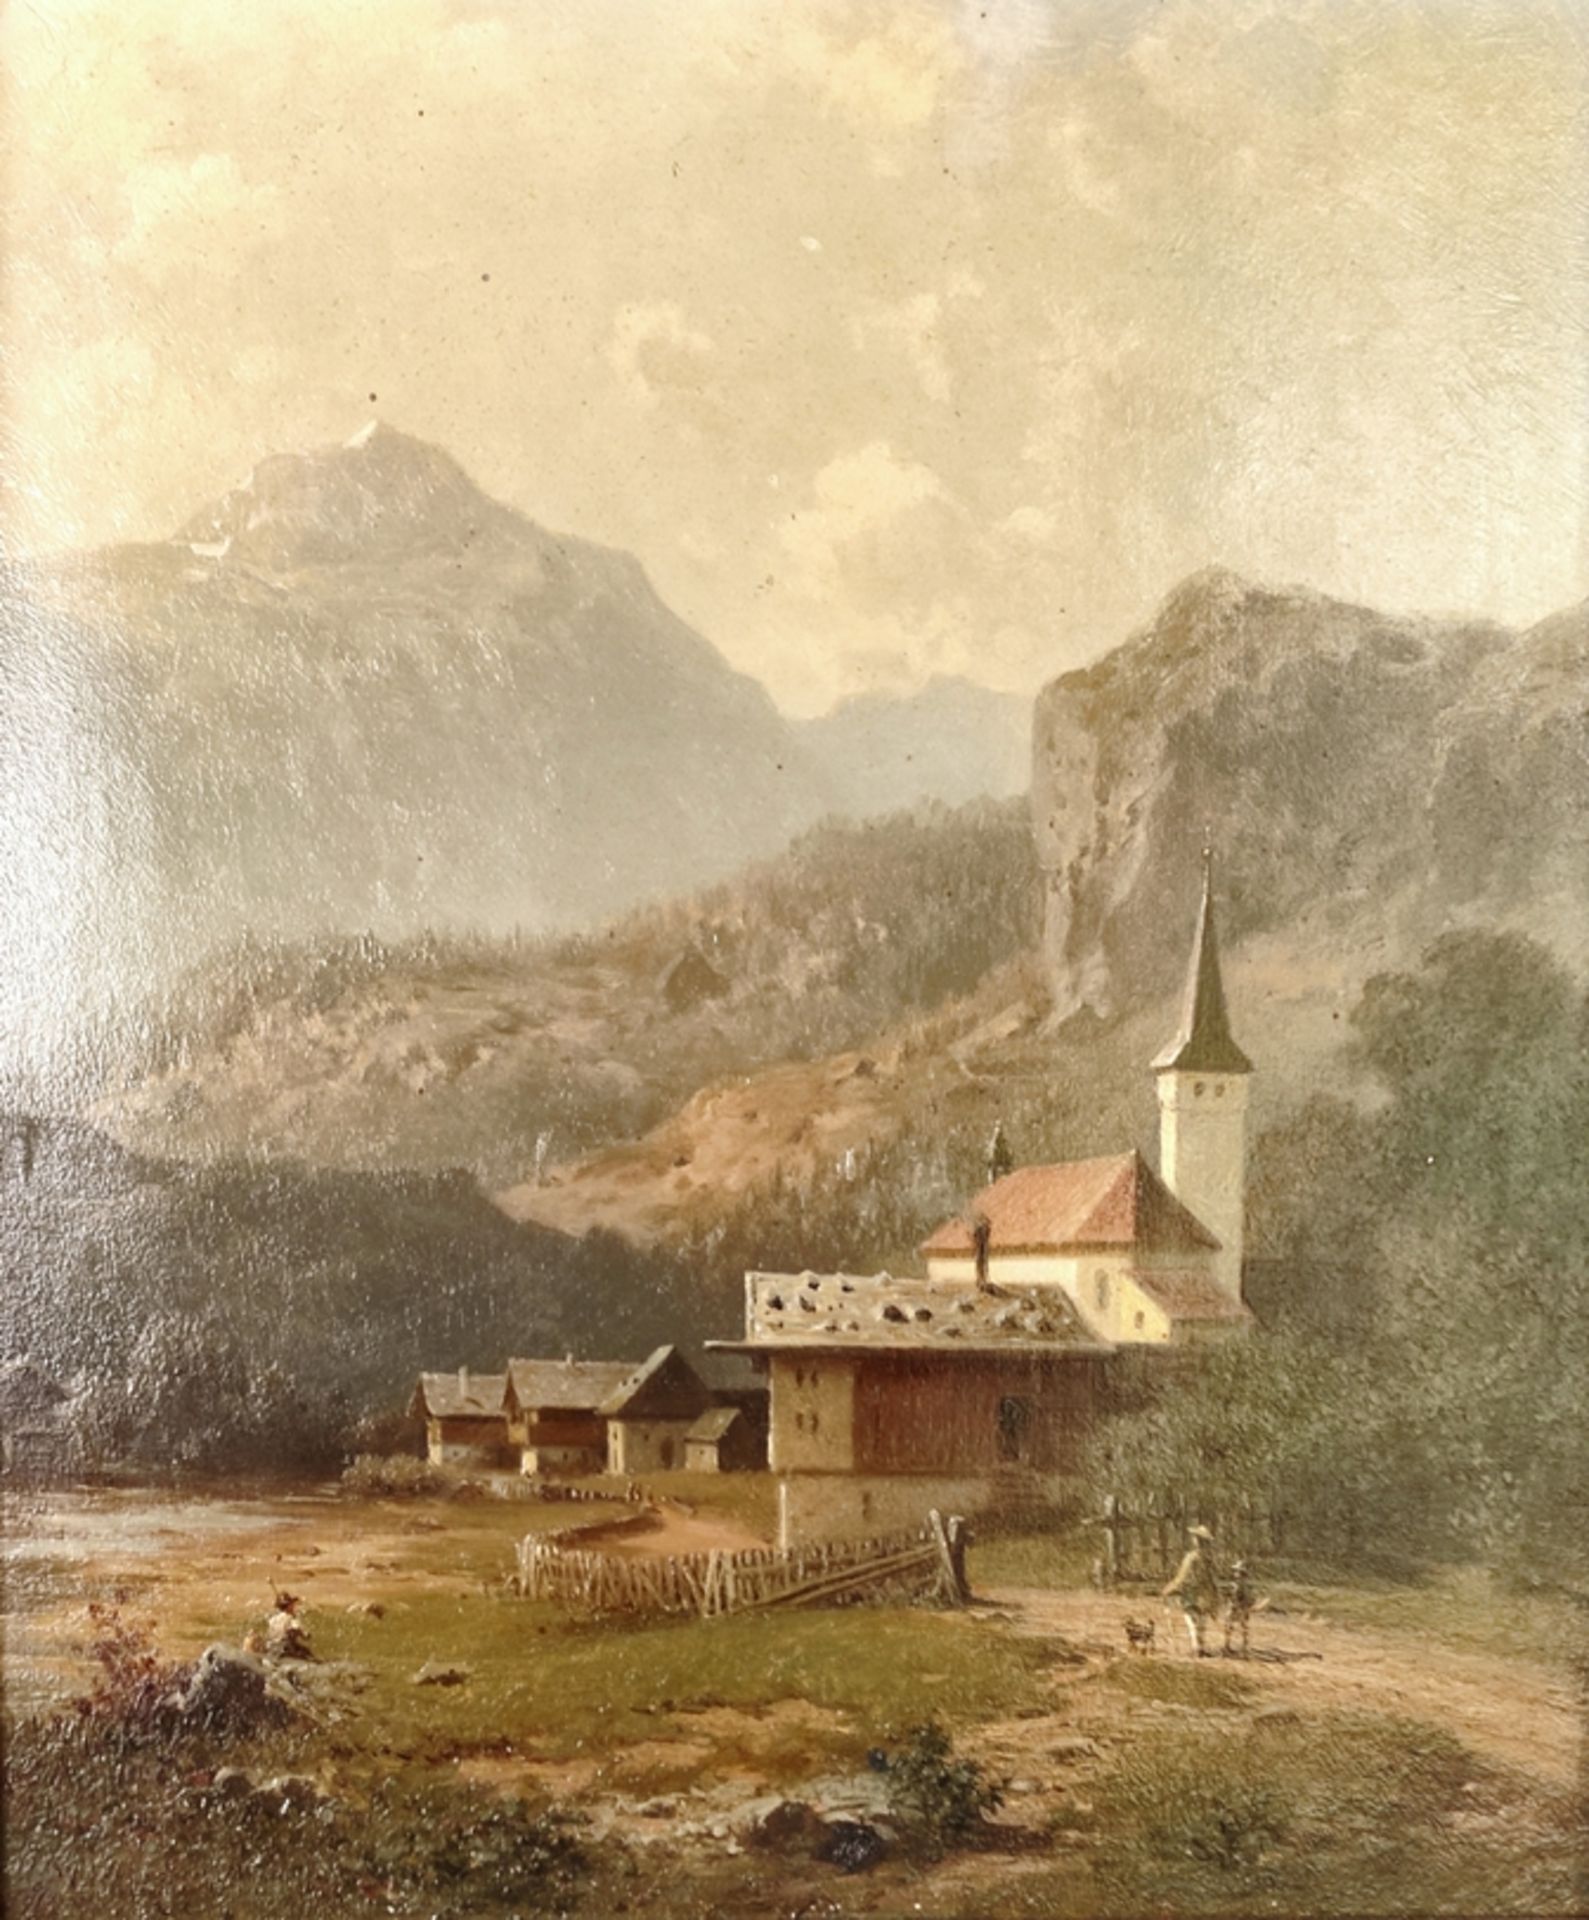 Meermann, Arnold (1829 Rehden - 1908 Nieder Thalheim bei Bad Landeck) "Village church" with view of